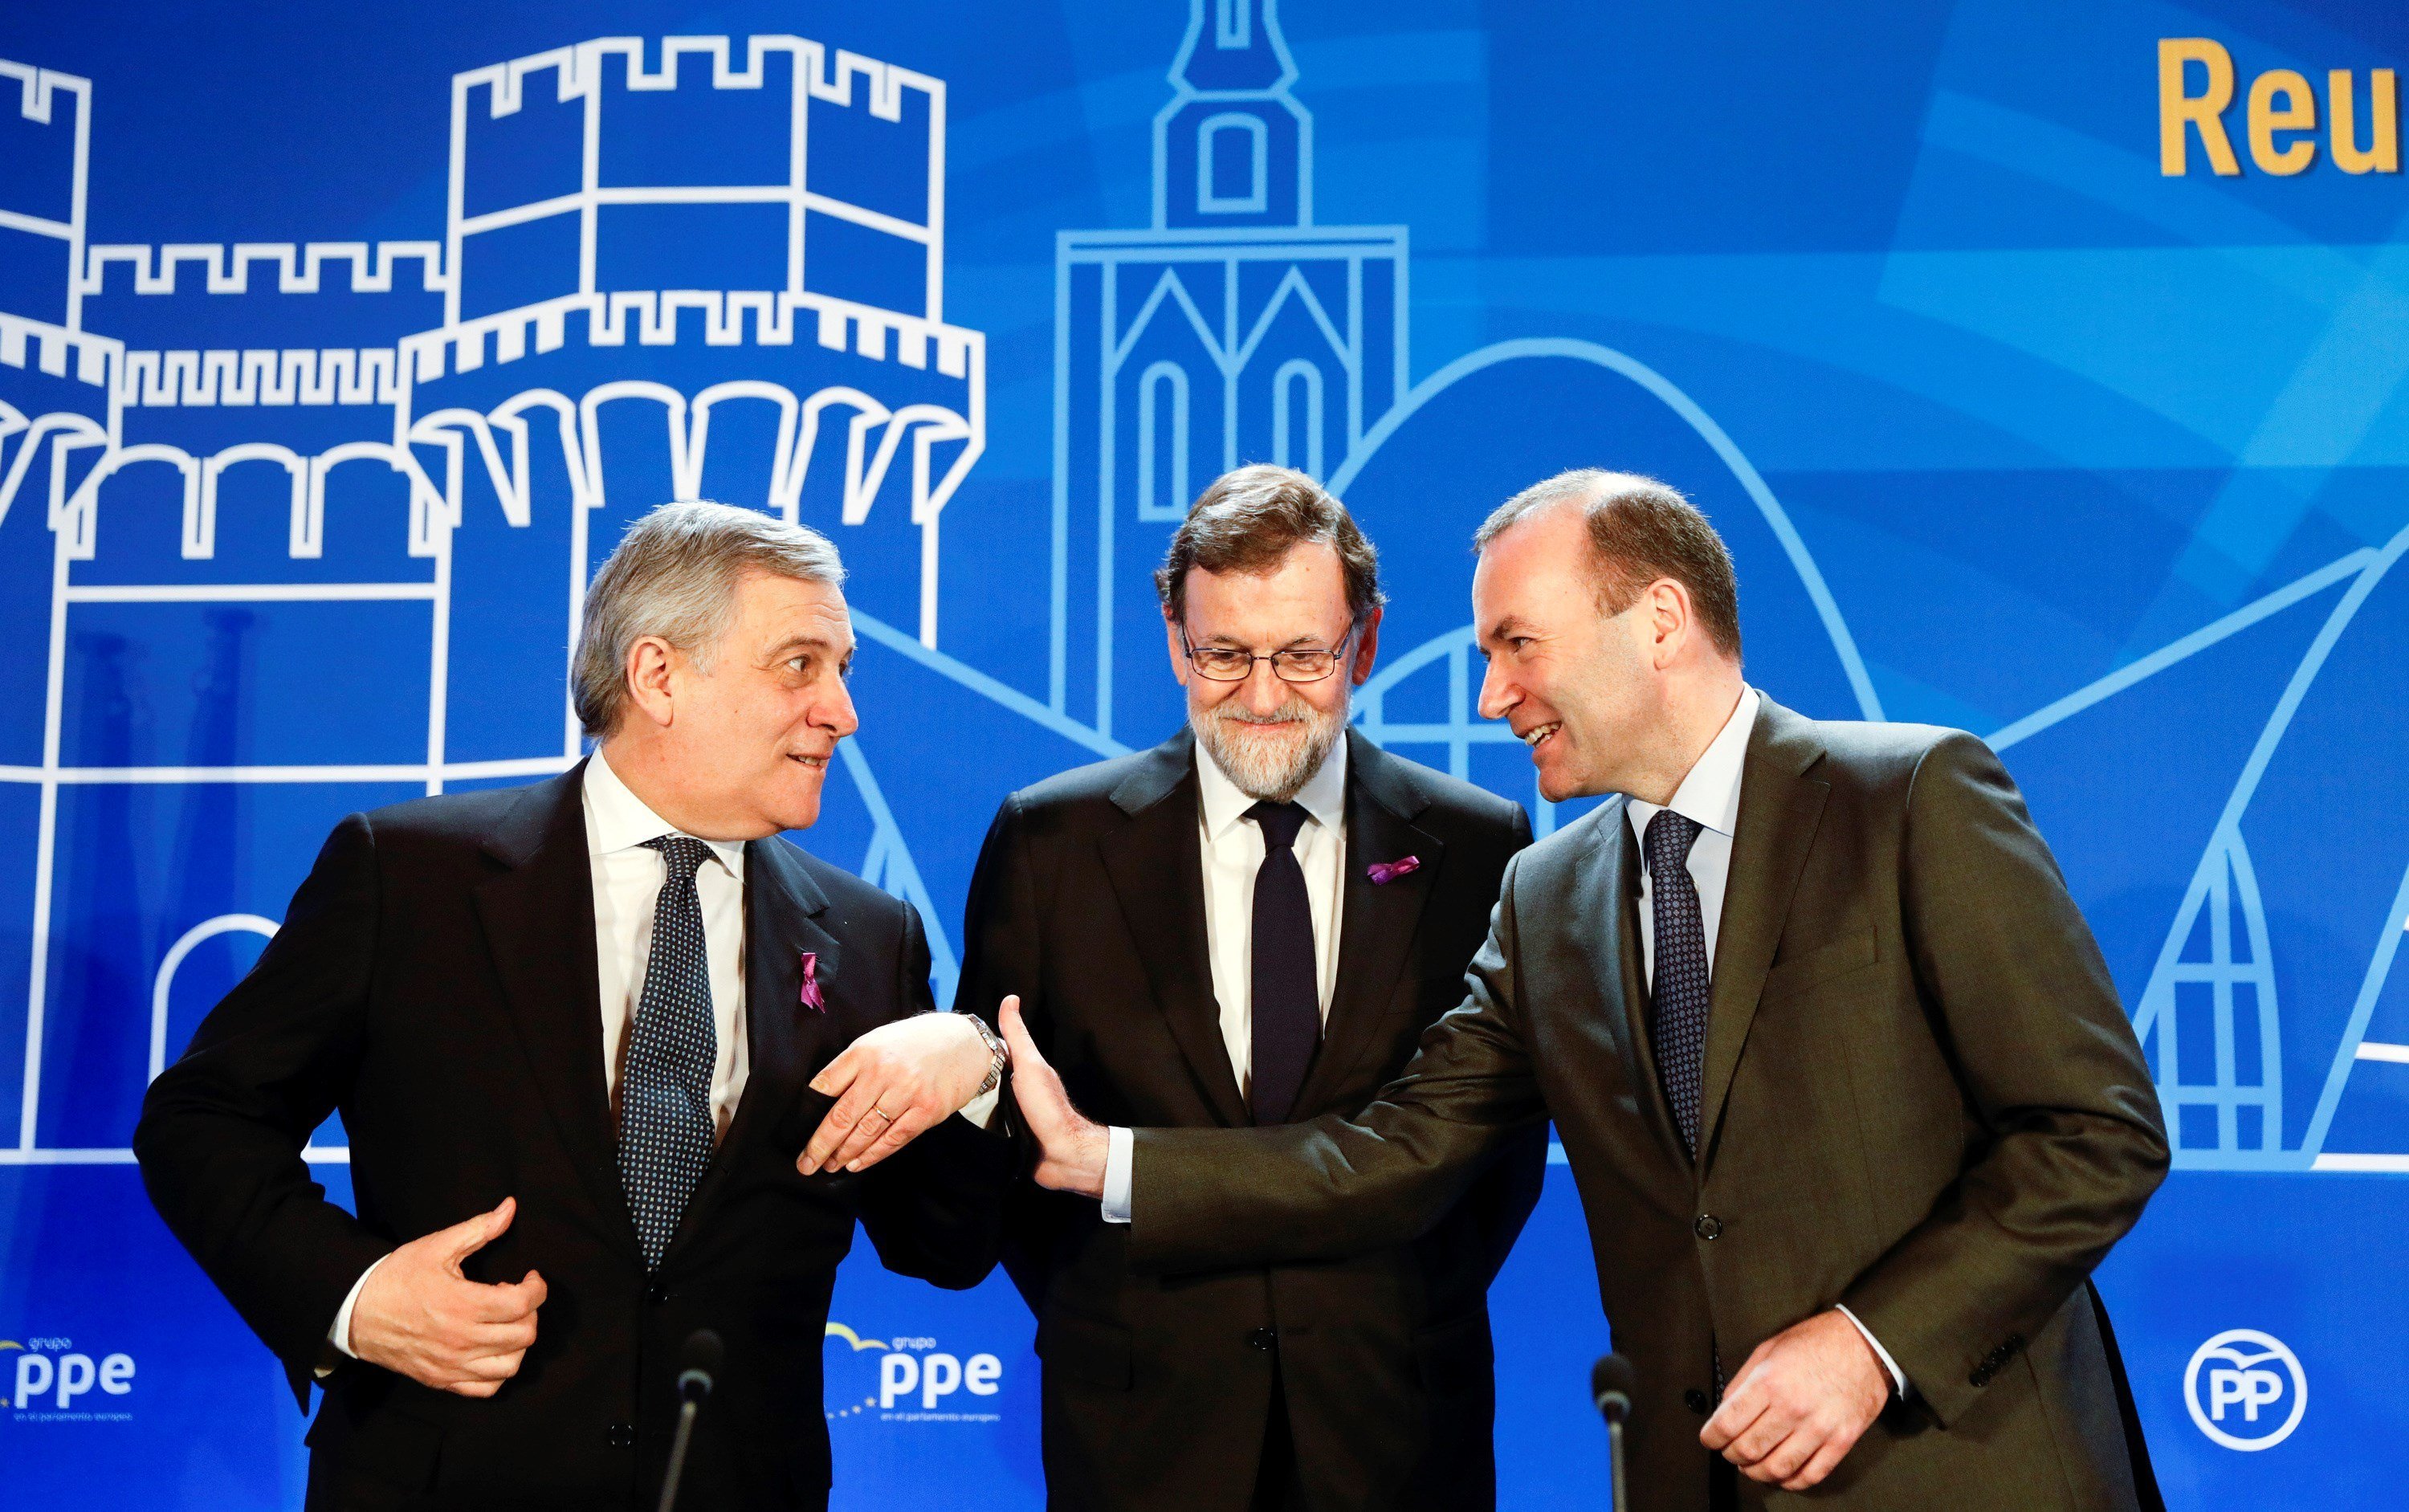 Rajoy, agradecido a los populares europeos por su apoyo con el "problema catalán"